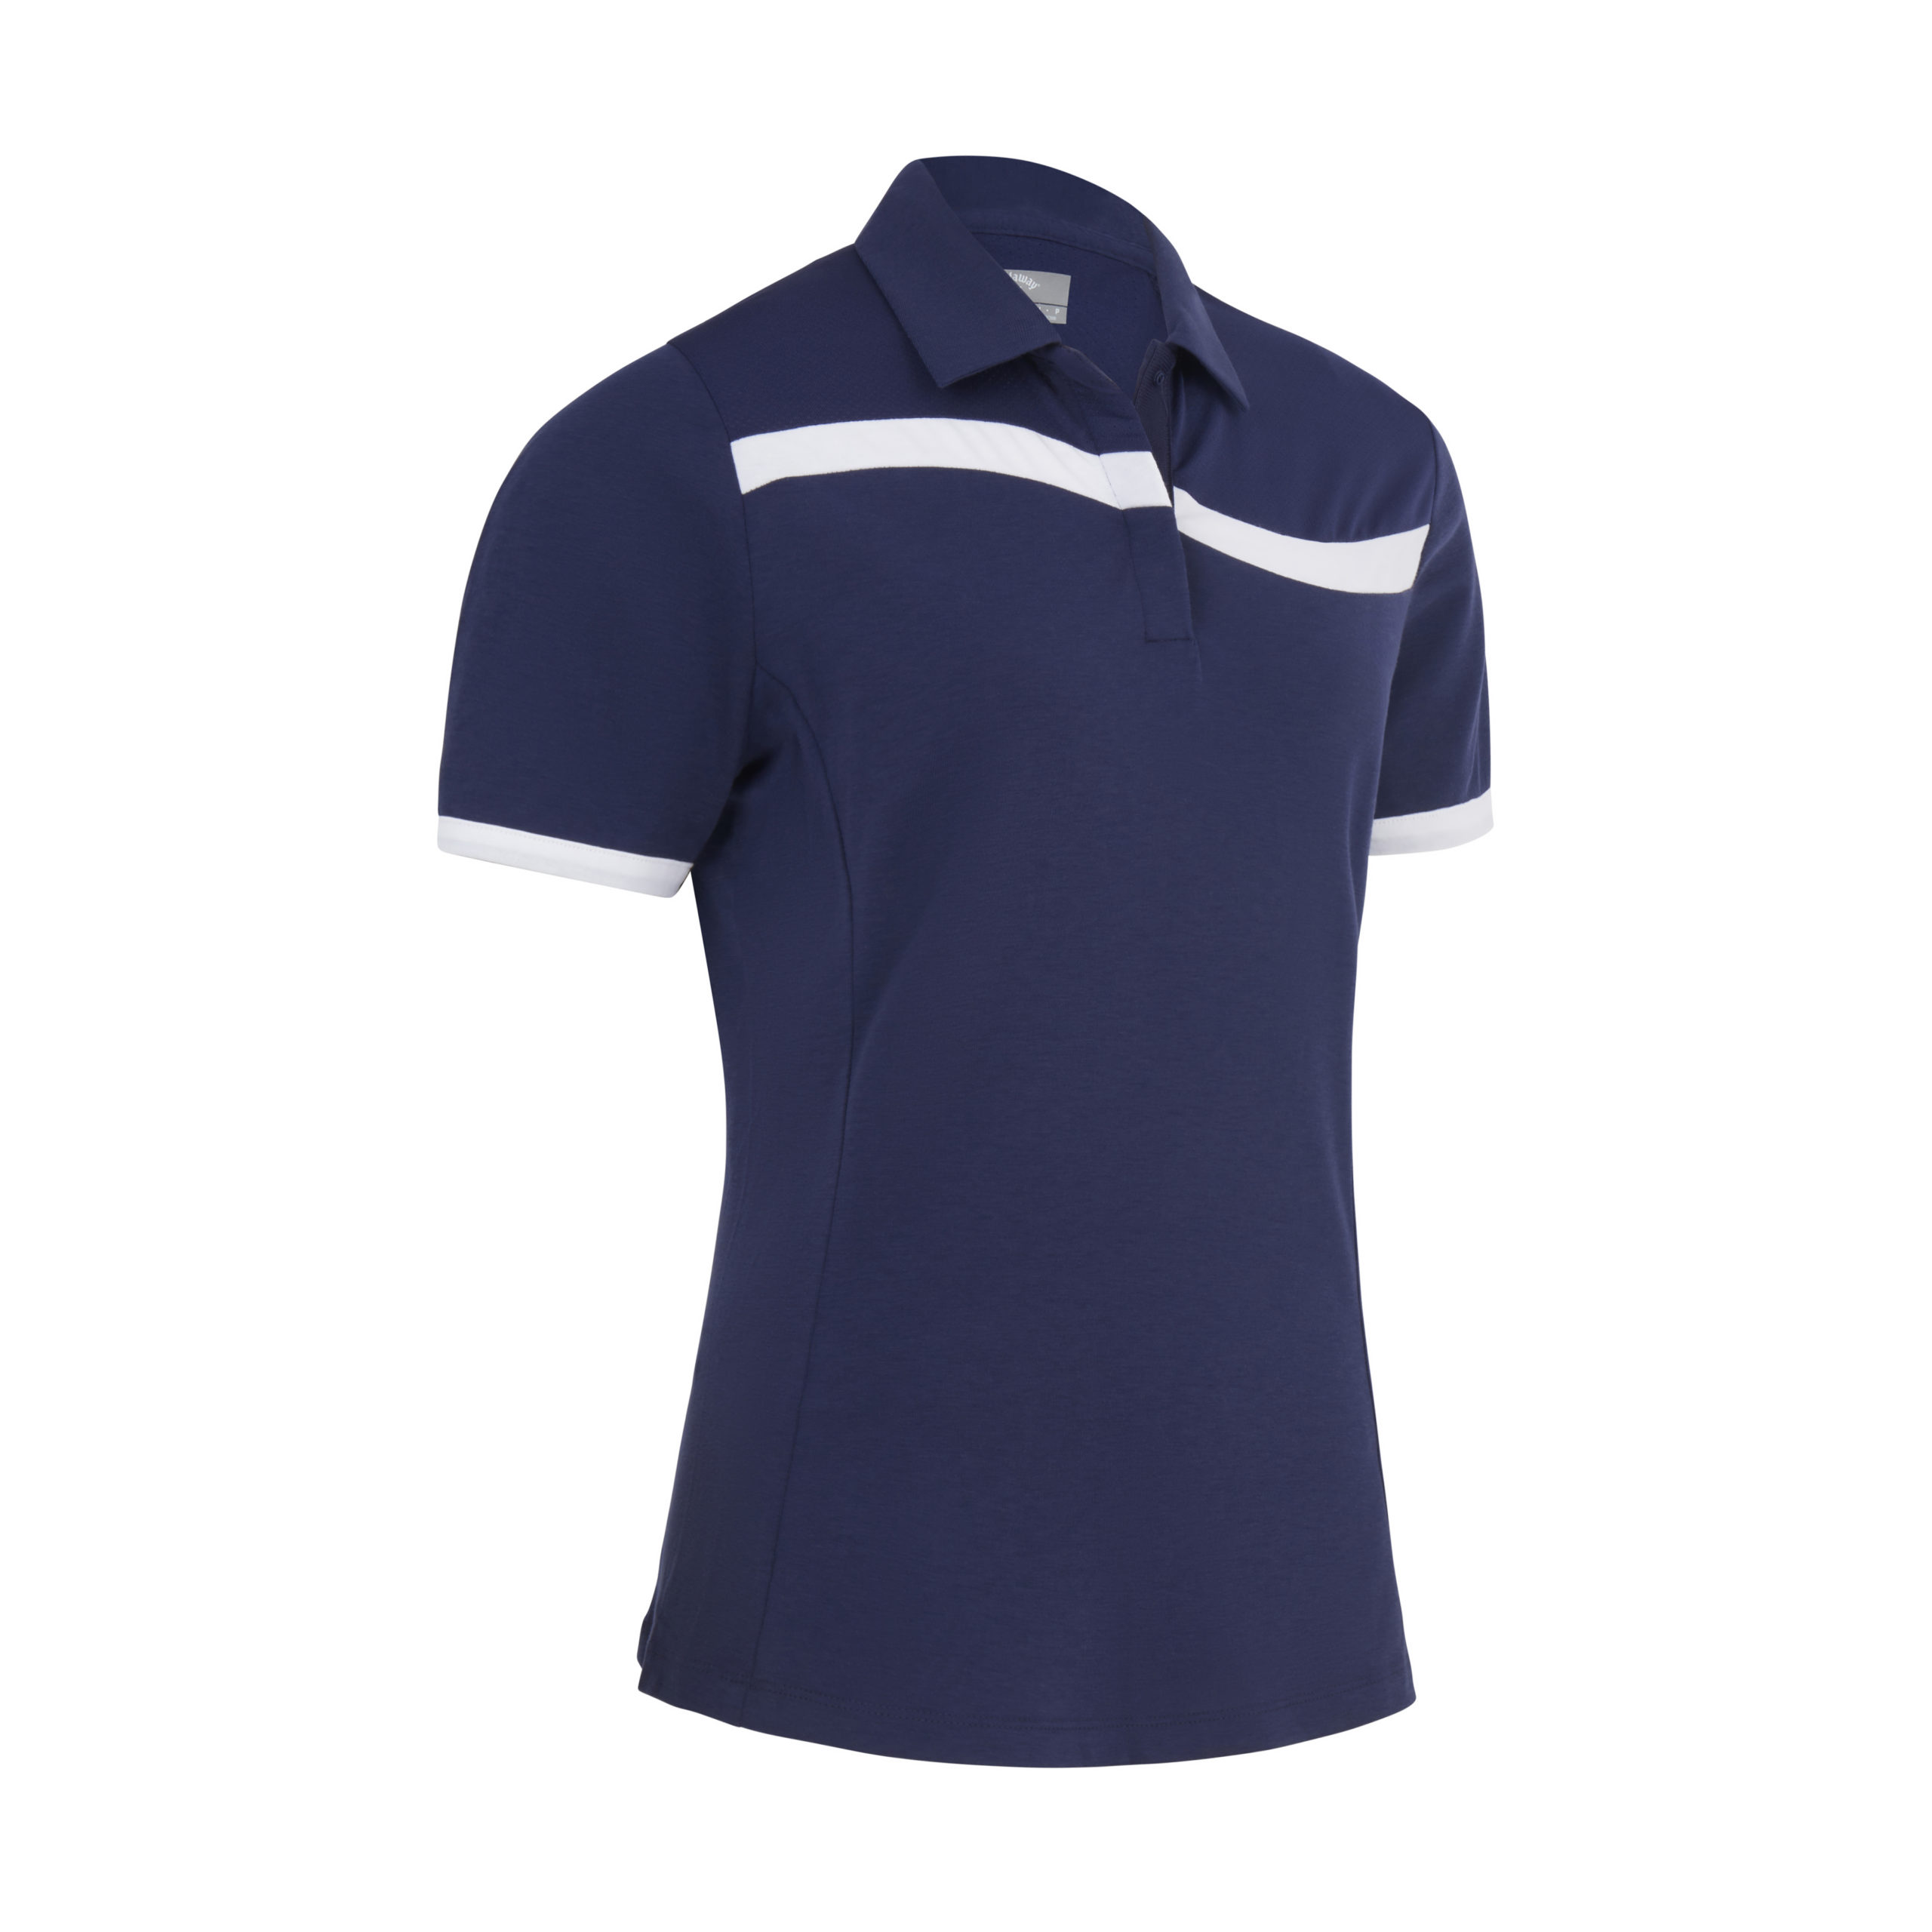 Callaway Colourblock dámské golfové triko, tmavě modré, vel. XS